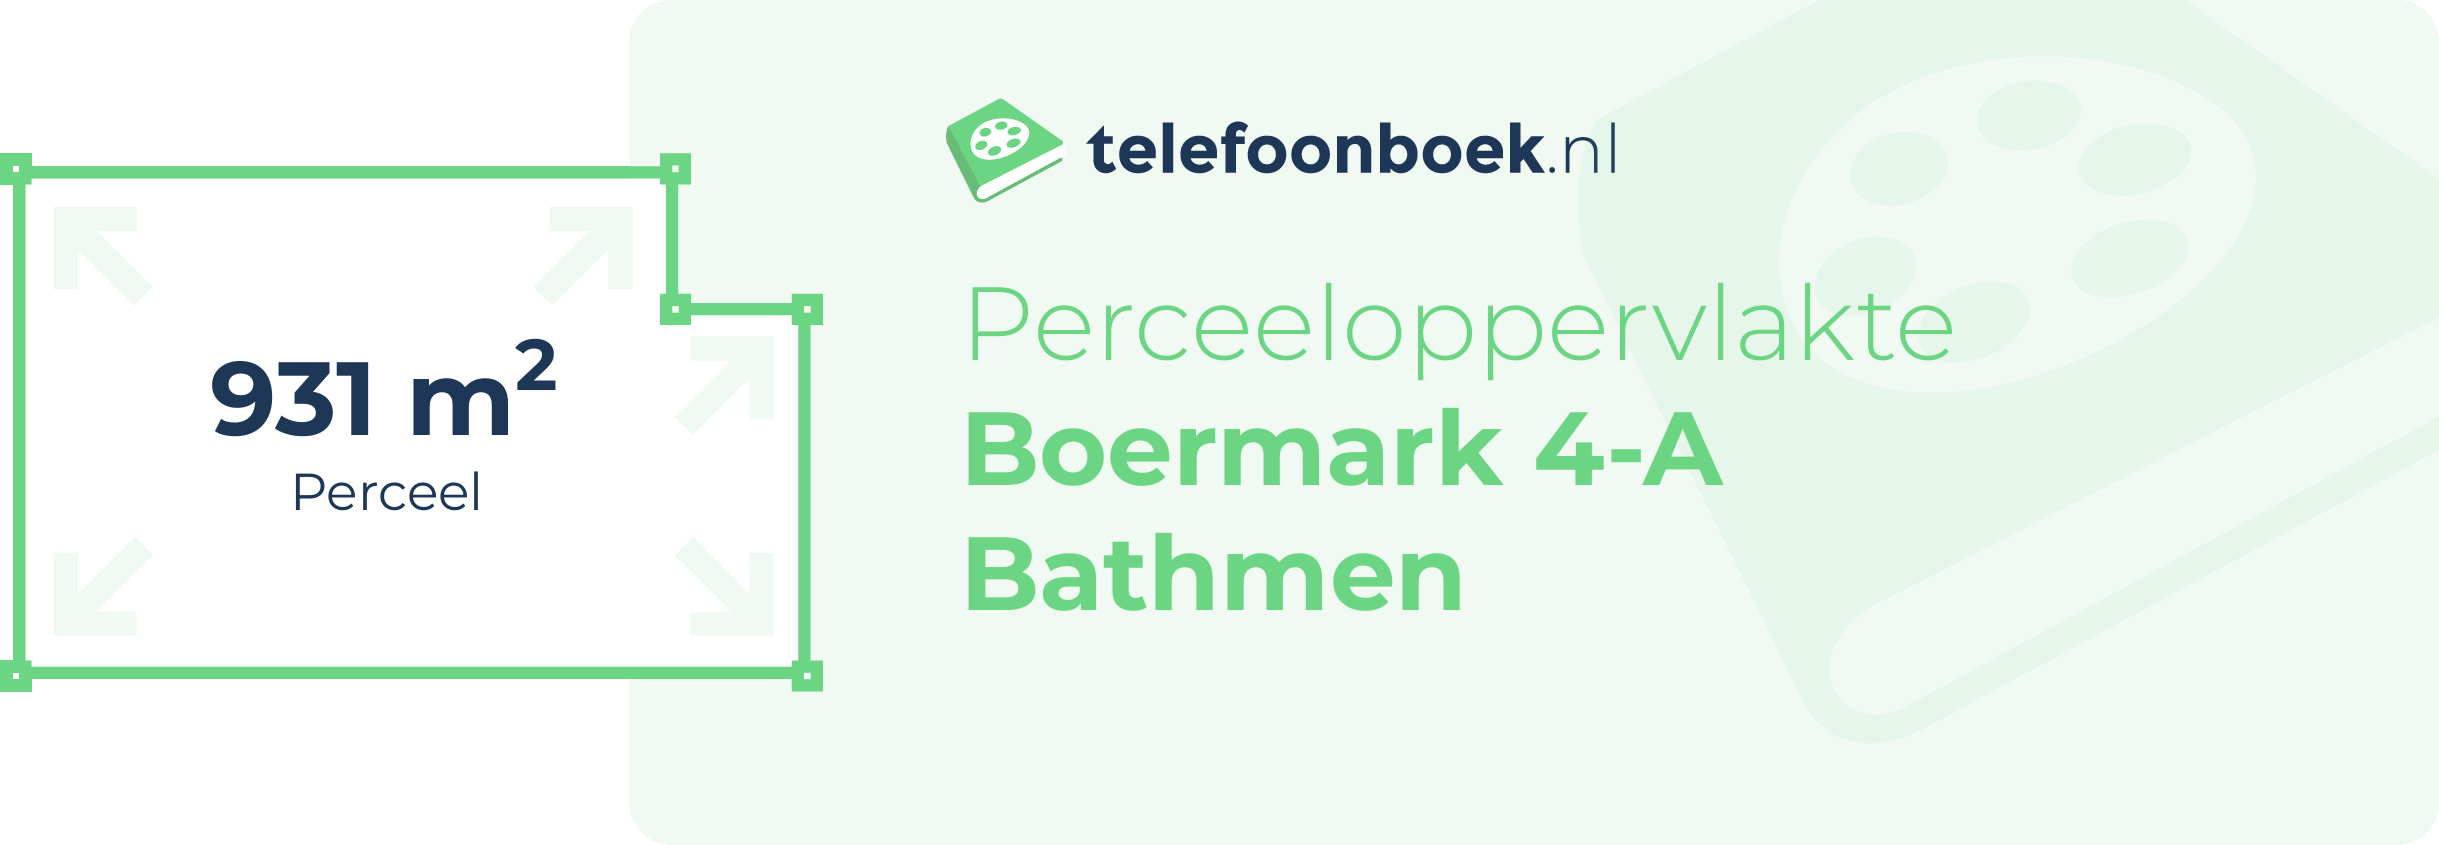 Perceeloppervlakte Boermark 4-A Bathmen